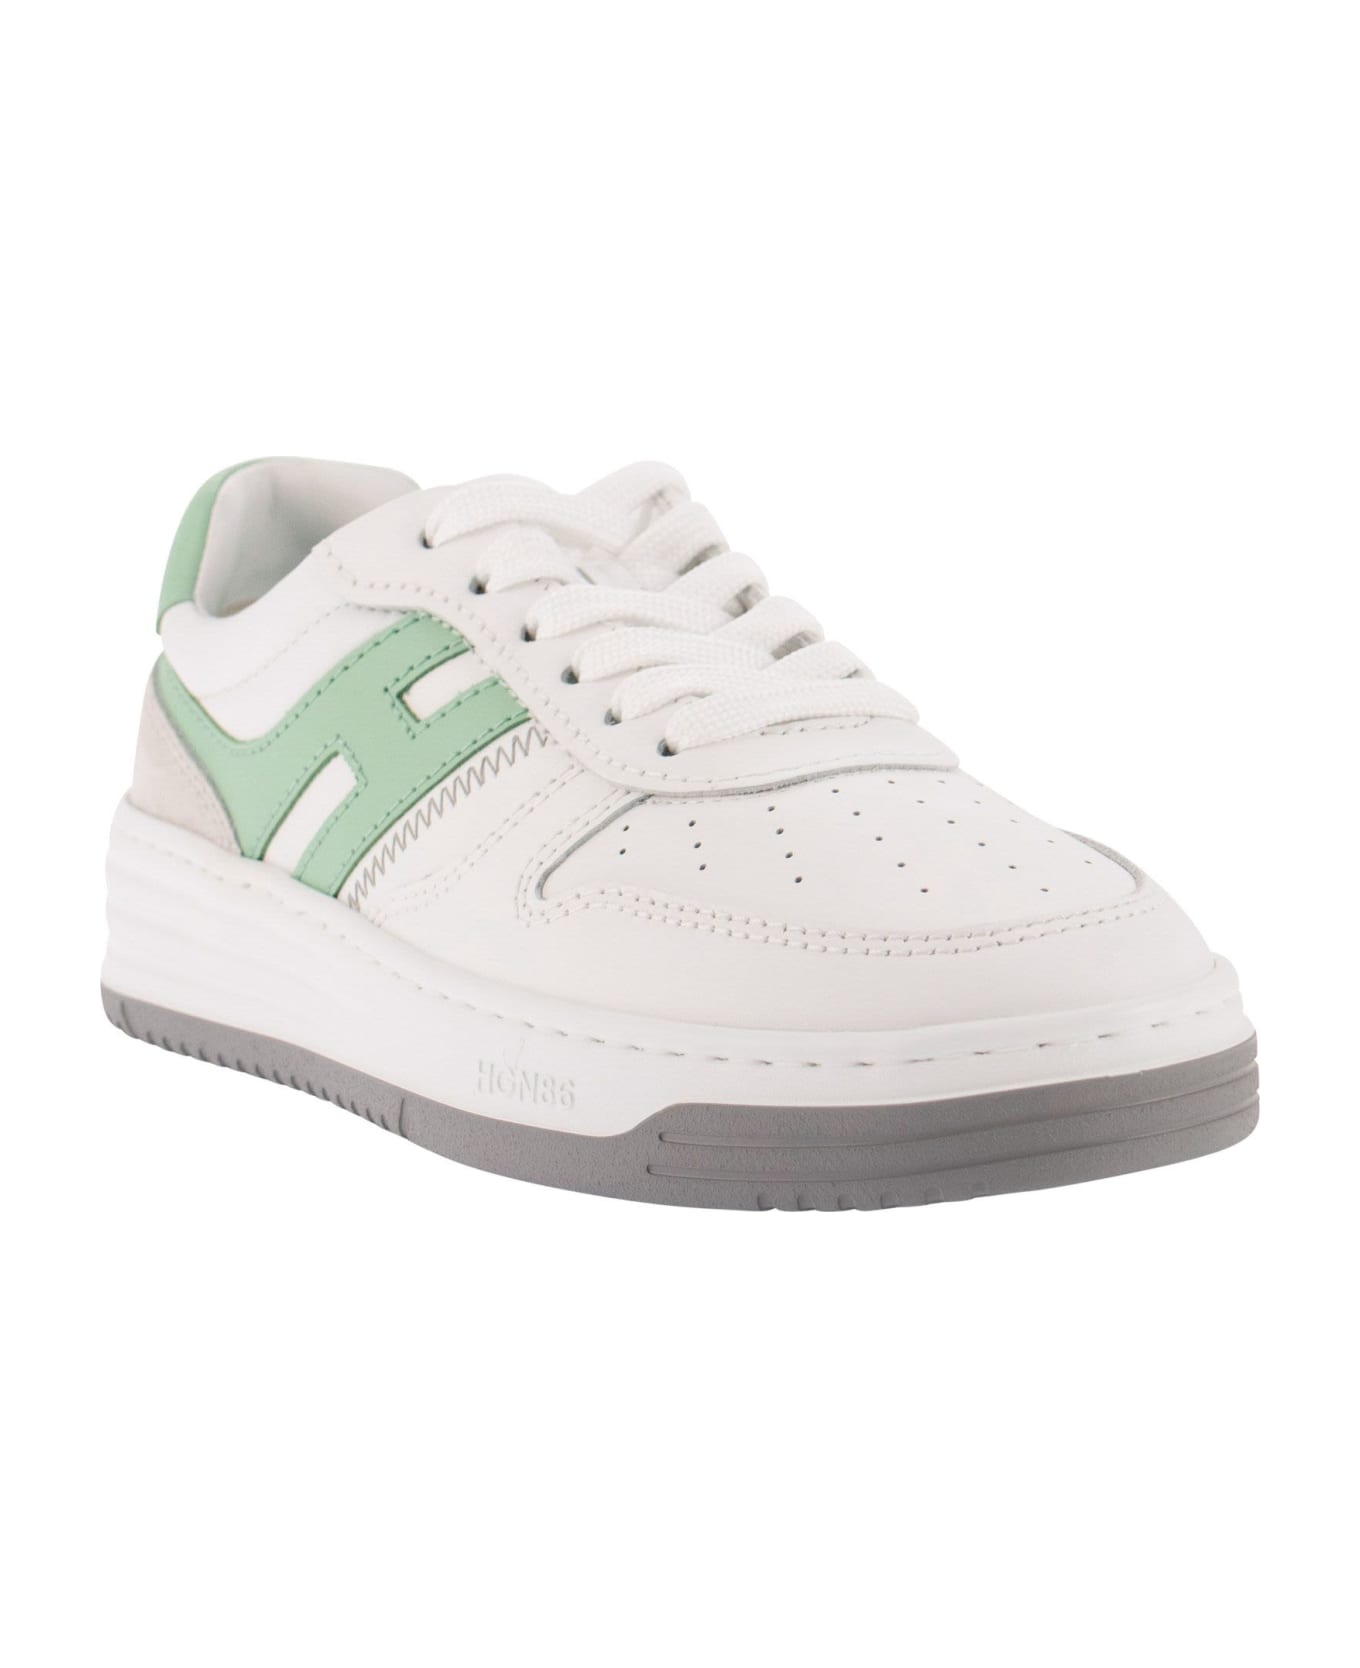 Hogan Sneakers H630 - White/green スニーカー